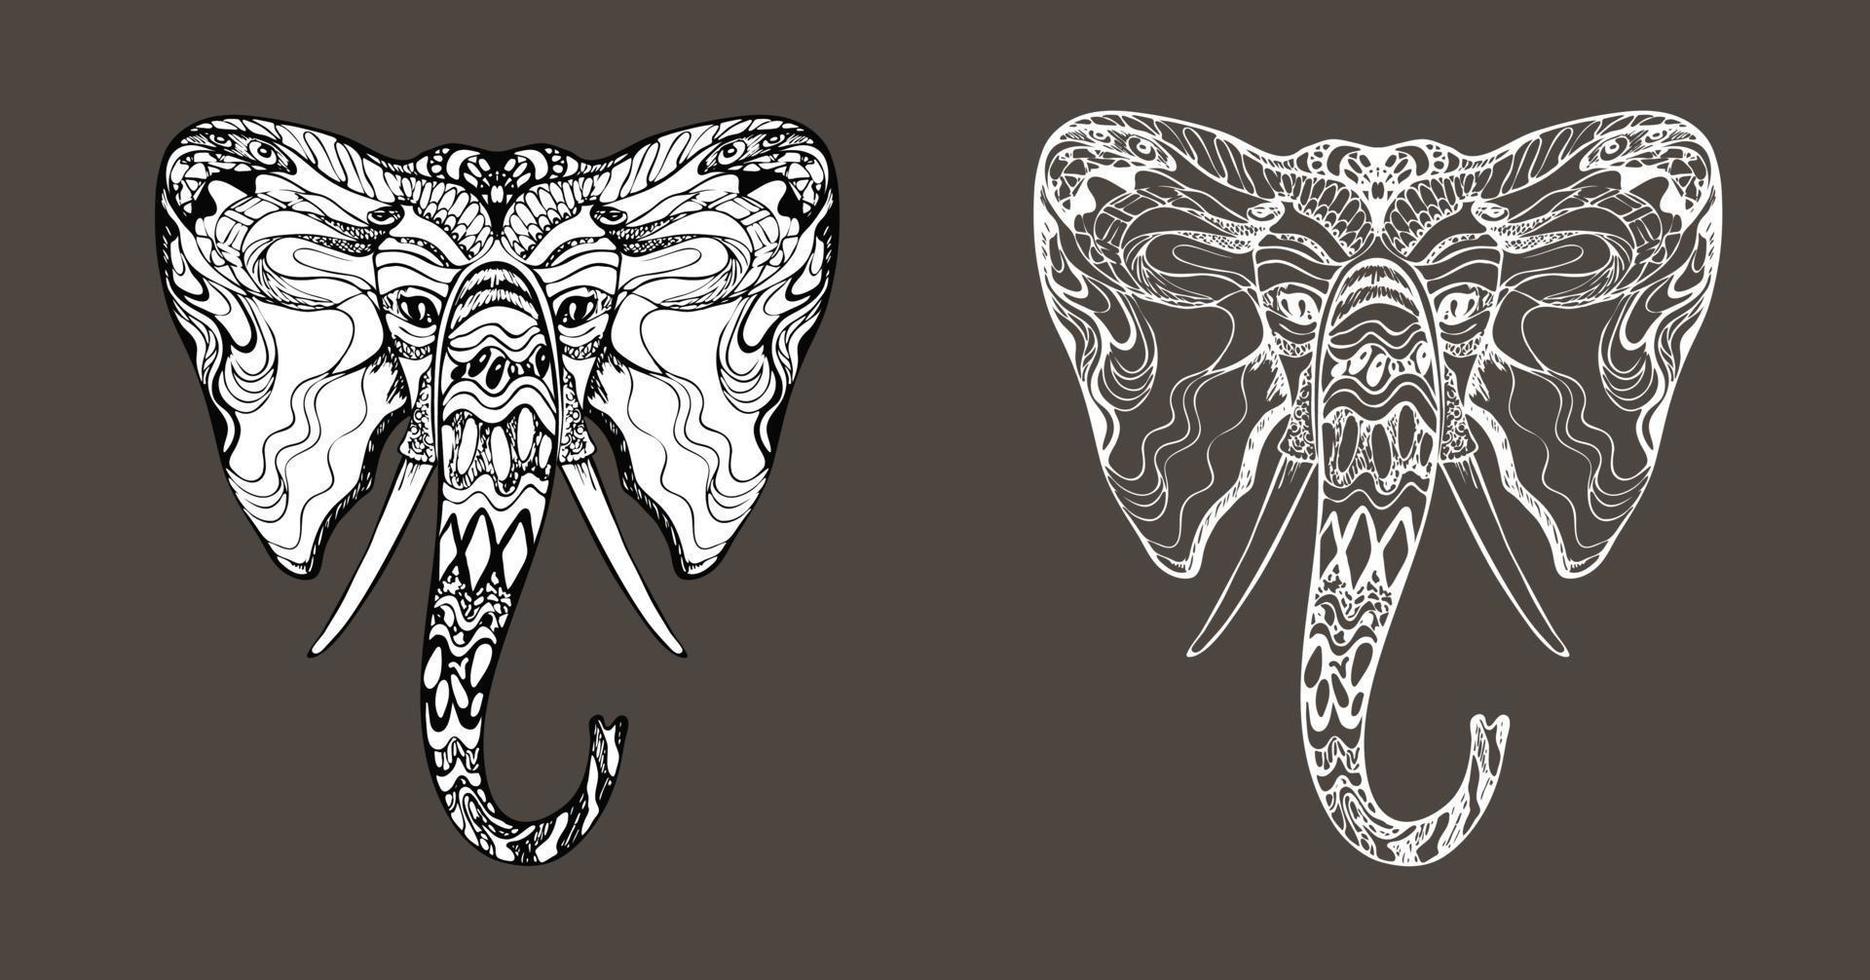 Stilvoller, schicker Hippie-Tattoo-Elefantenkopf, Ganesh-Gesicht, einzigartiger handgezeichneter ethnischer schwarzer Umriss, elegante Kontur, mit Weiß gefüllte Silhouette, Tiersafari-Design, Drucke, Färbung vektor